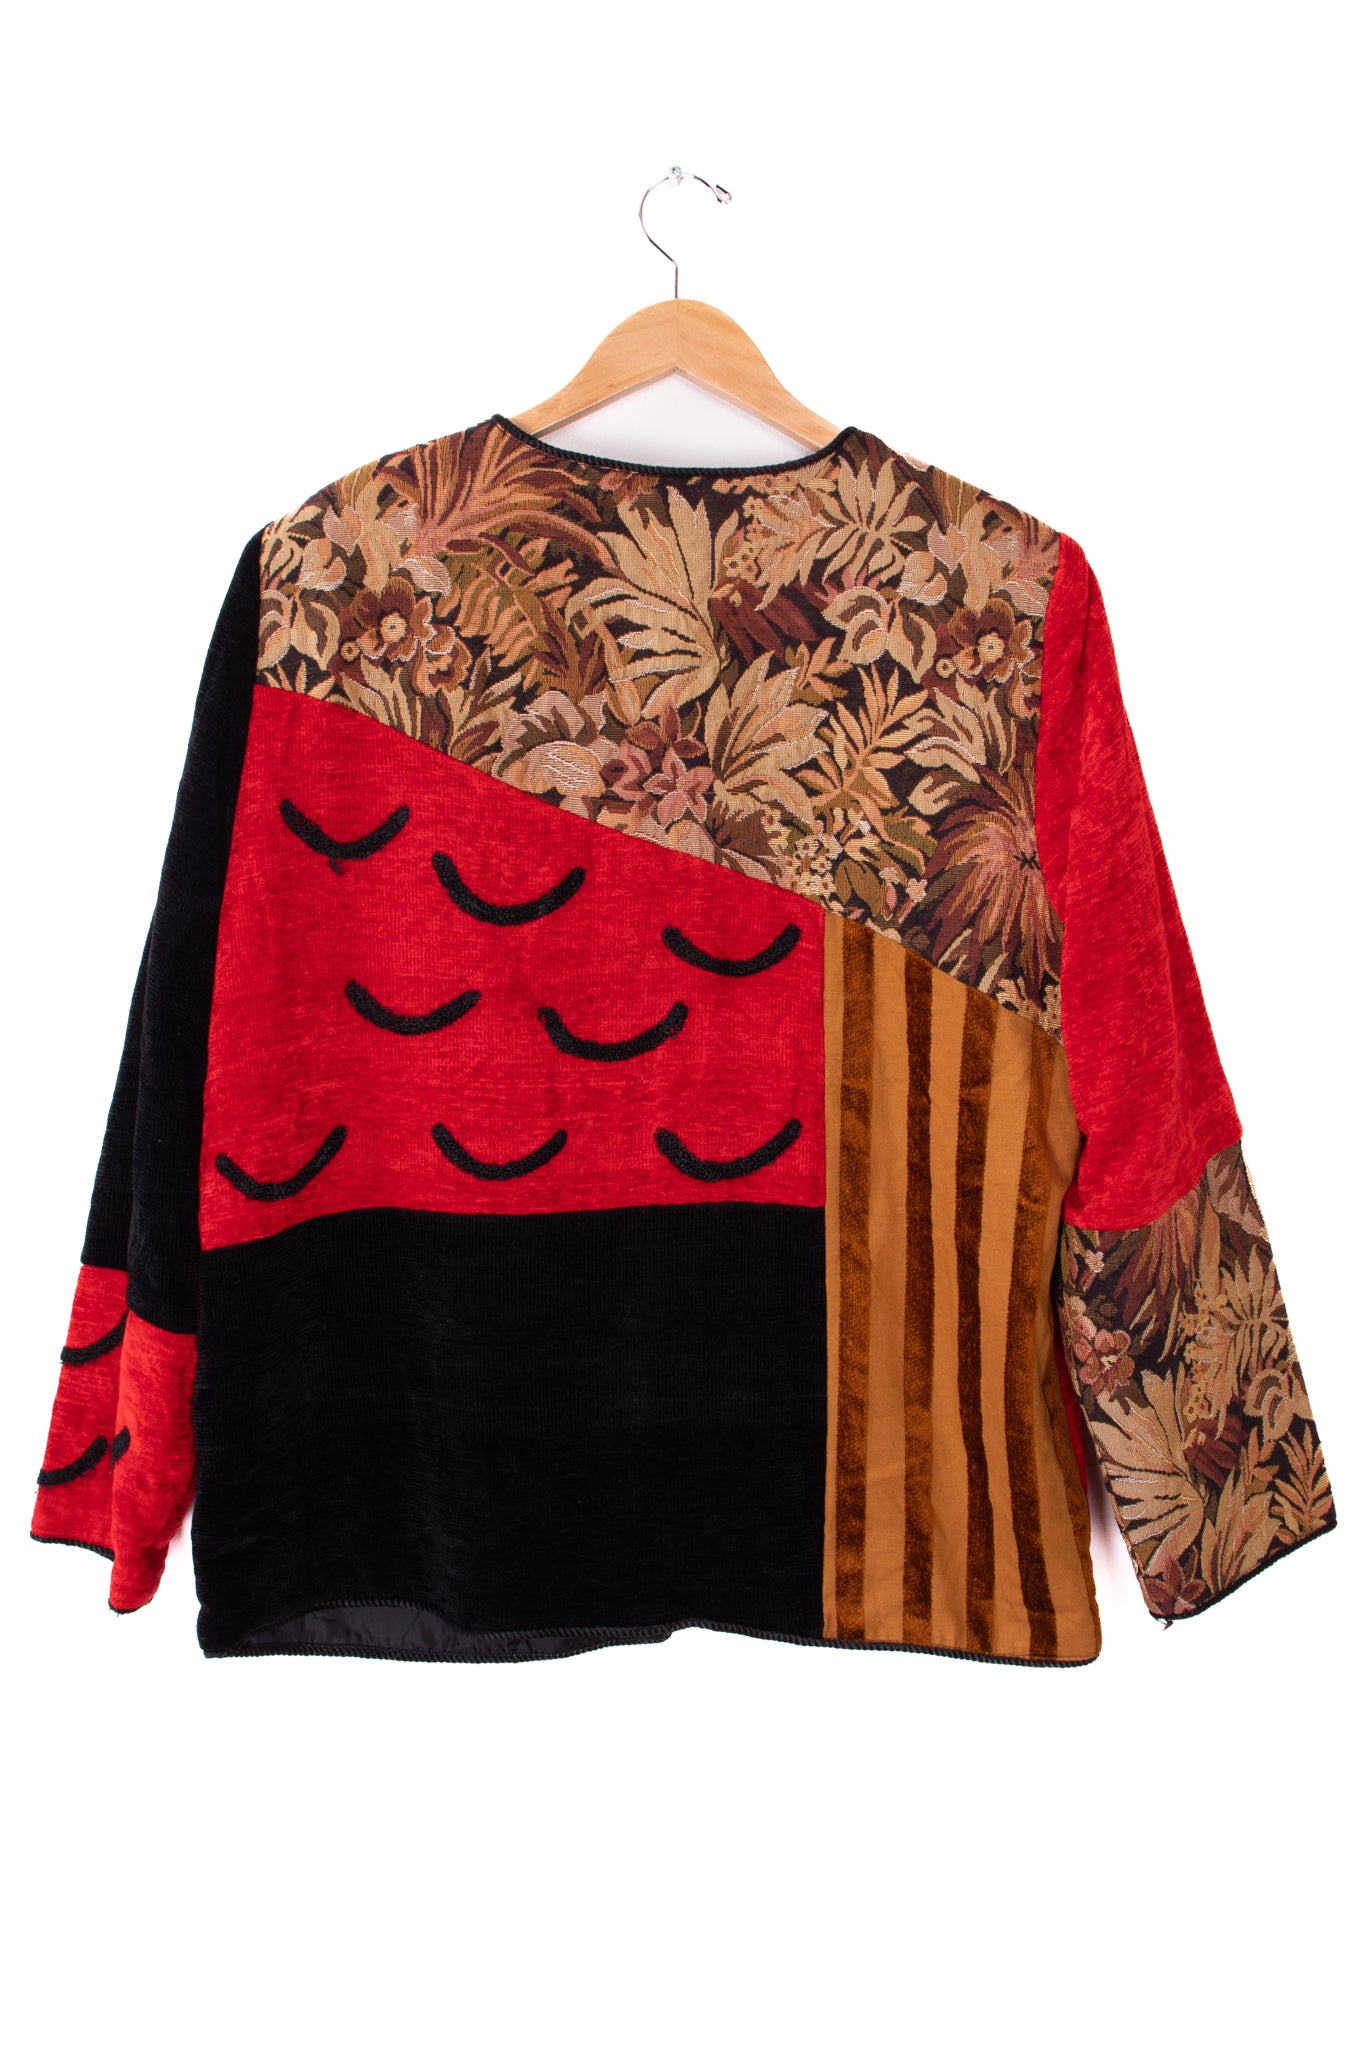 Indigo Moon Red Oriental Tapestry Blazer